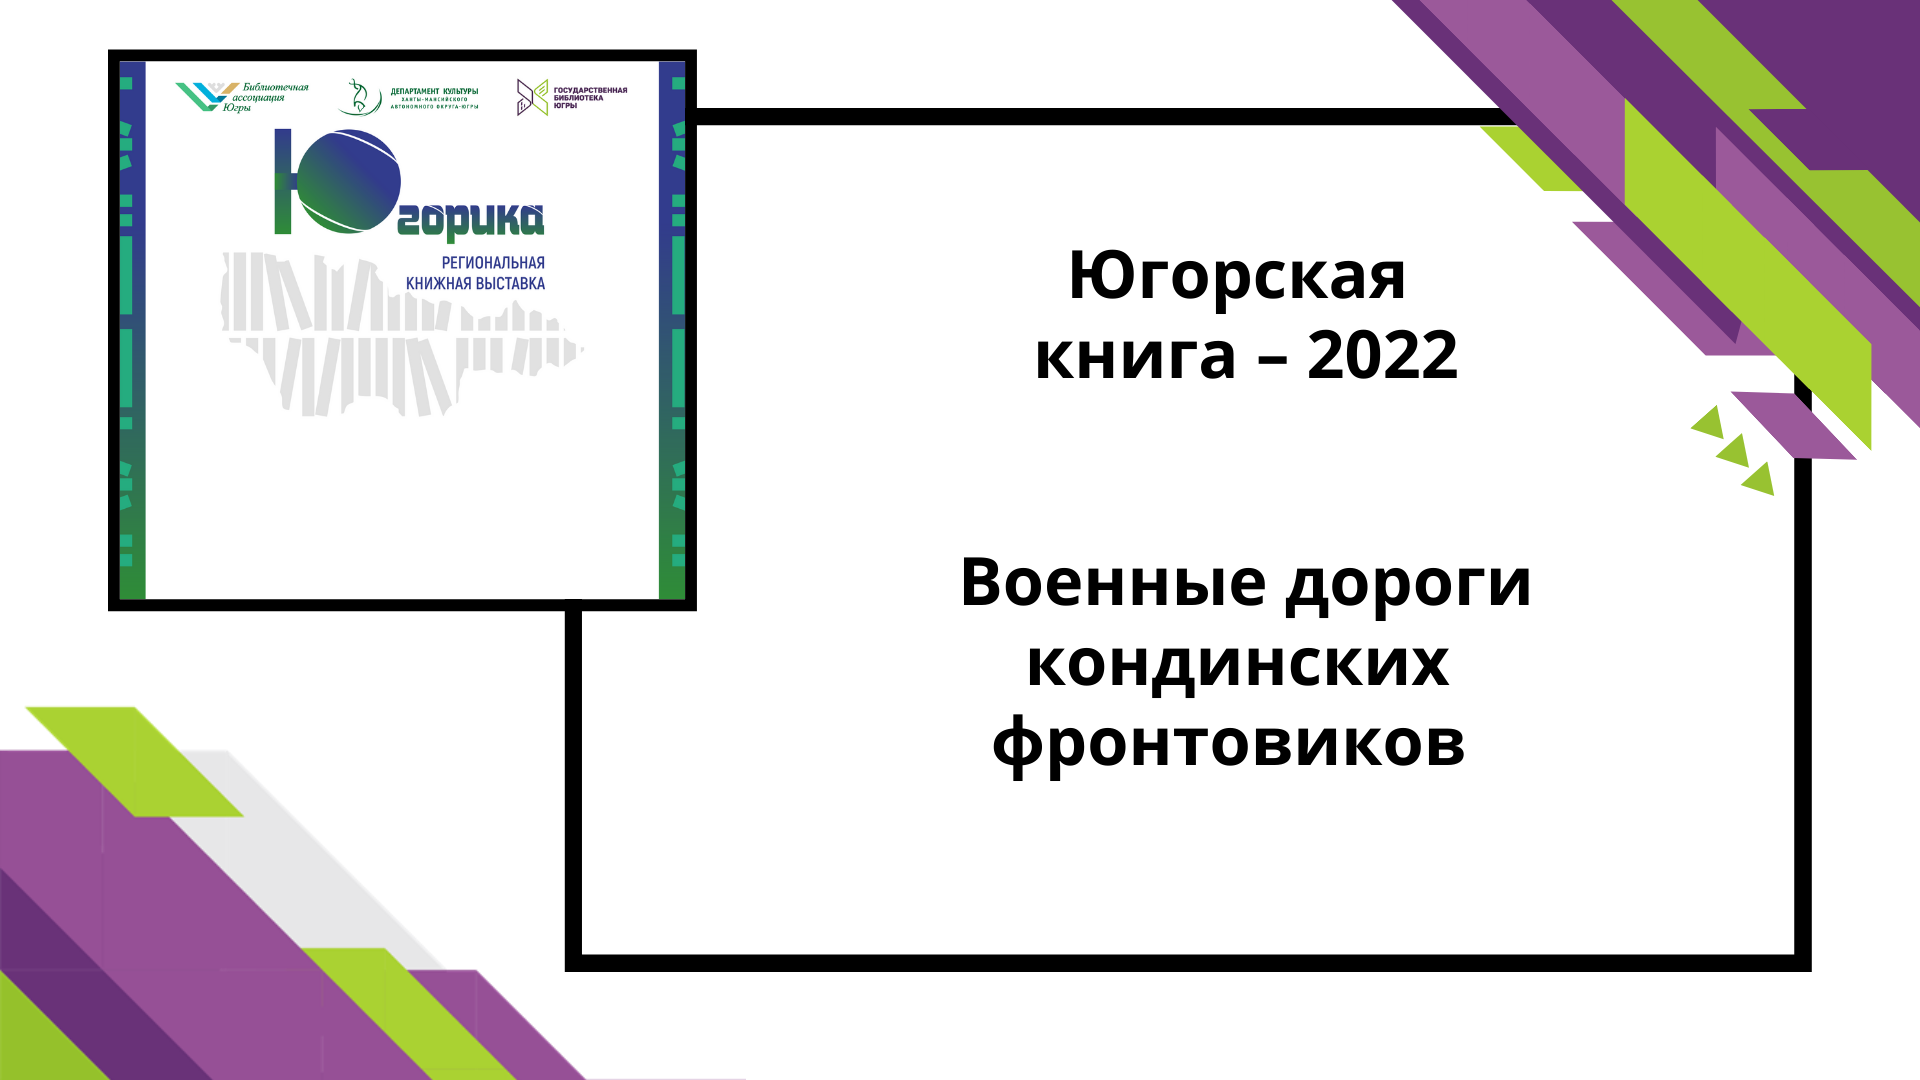 Югорская книга-2022 Военные дороги кондинских фронтовиков